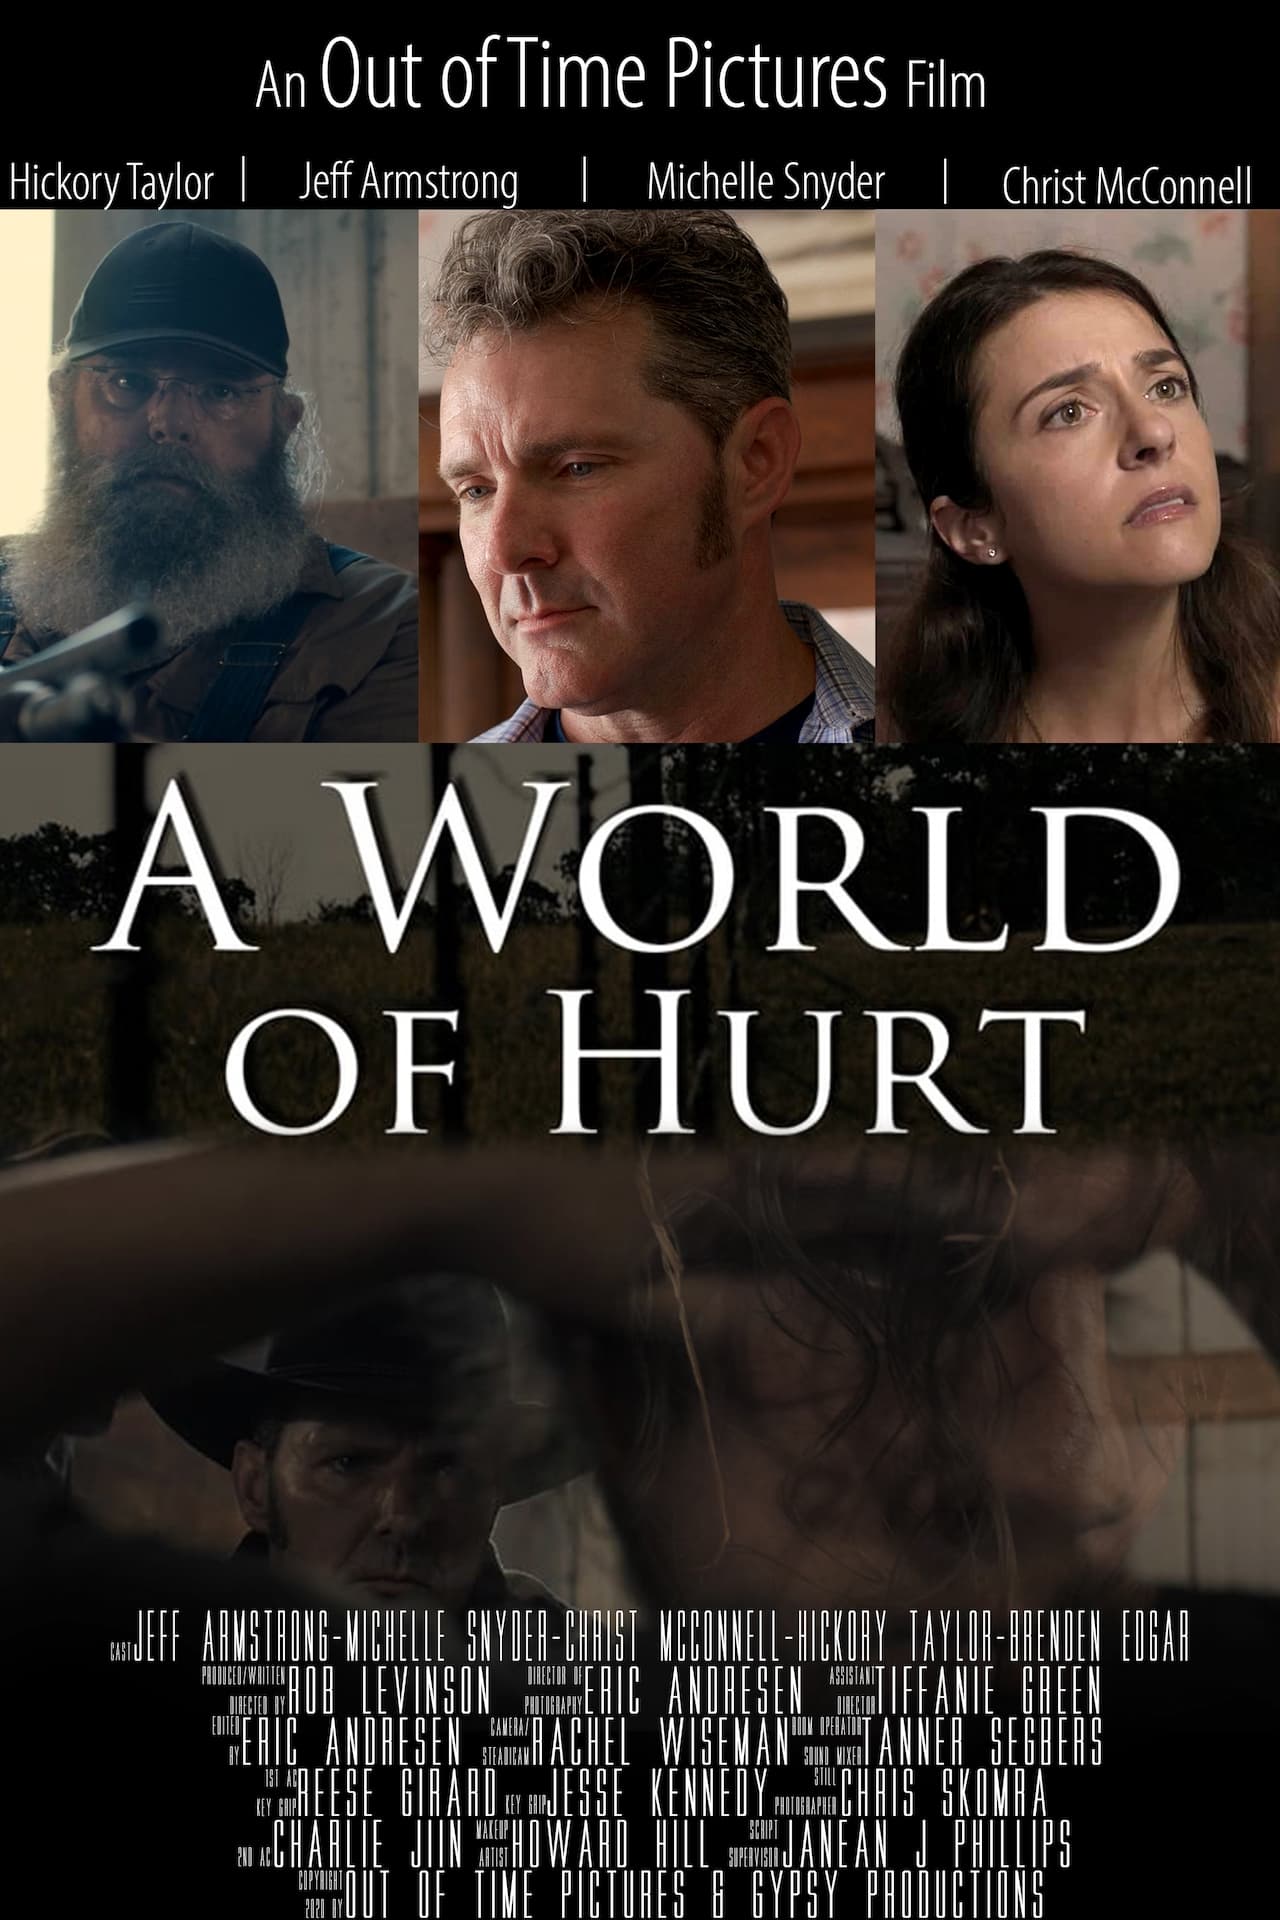 A World of Hurt